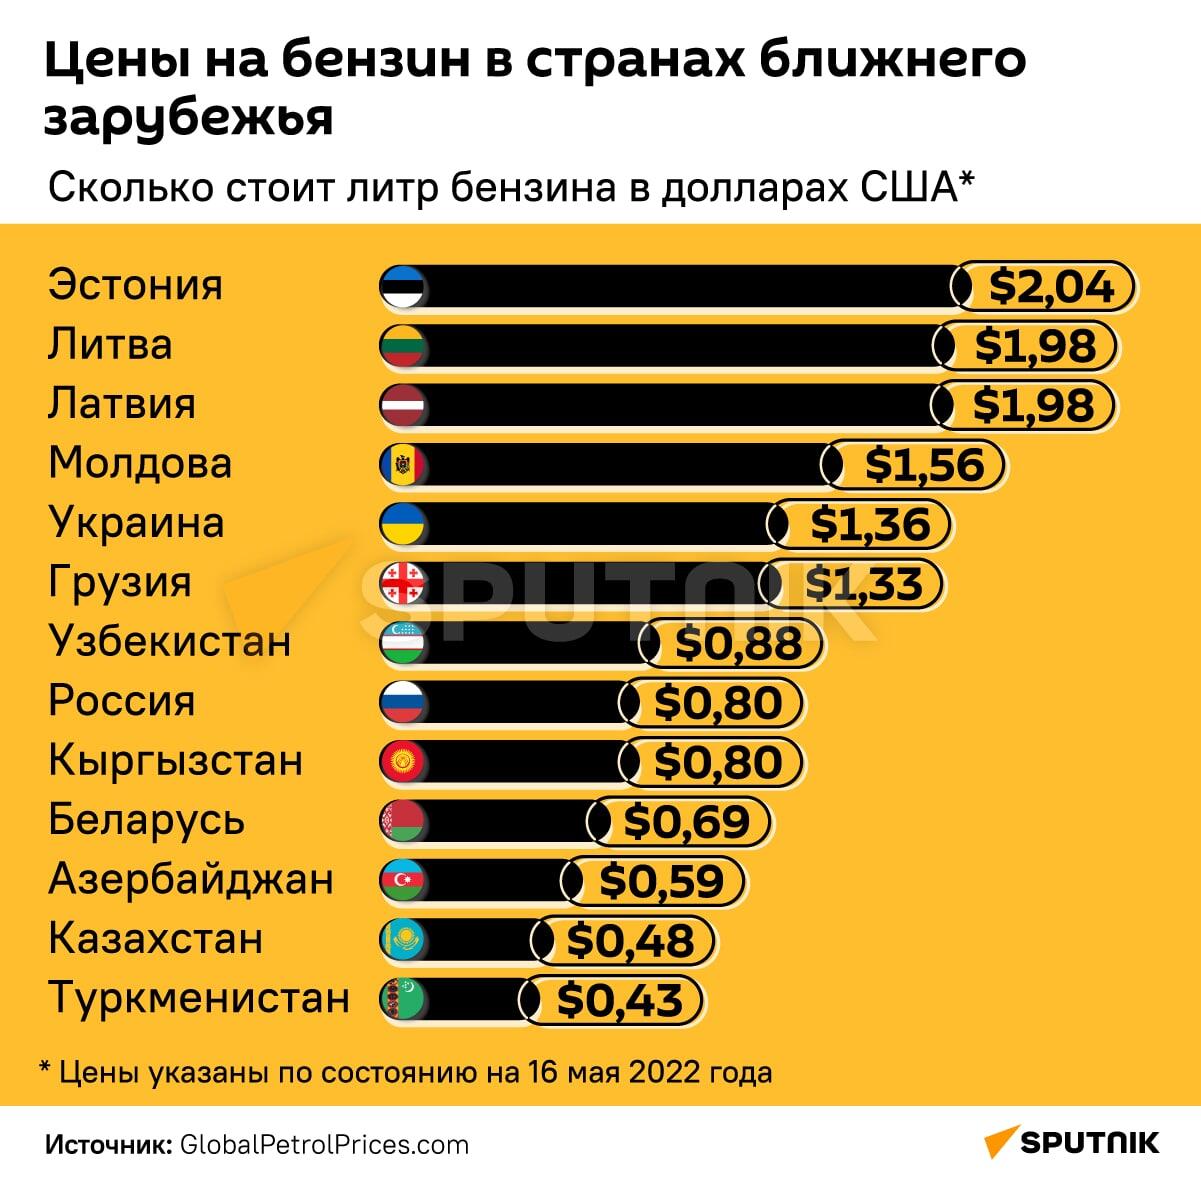 Инфографика: Цены на бензин в странах ближнего зарубежья - Sputnik Азербайджан